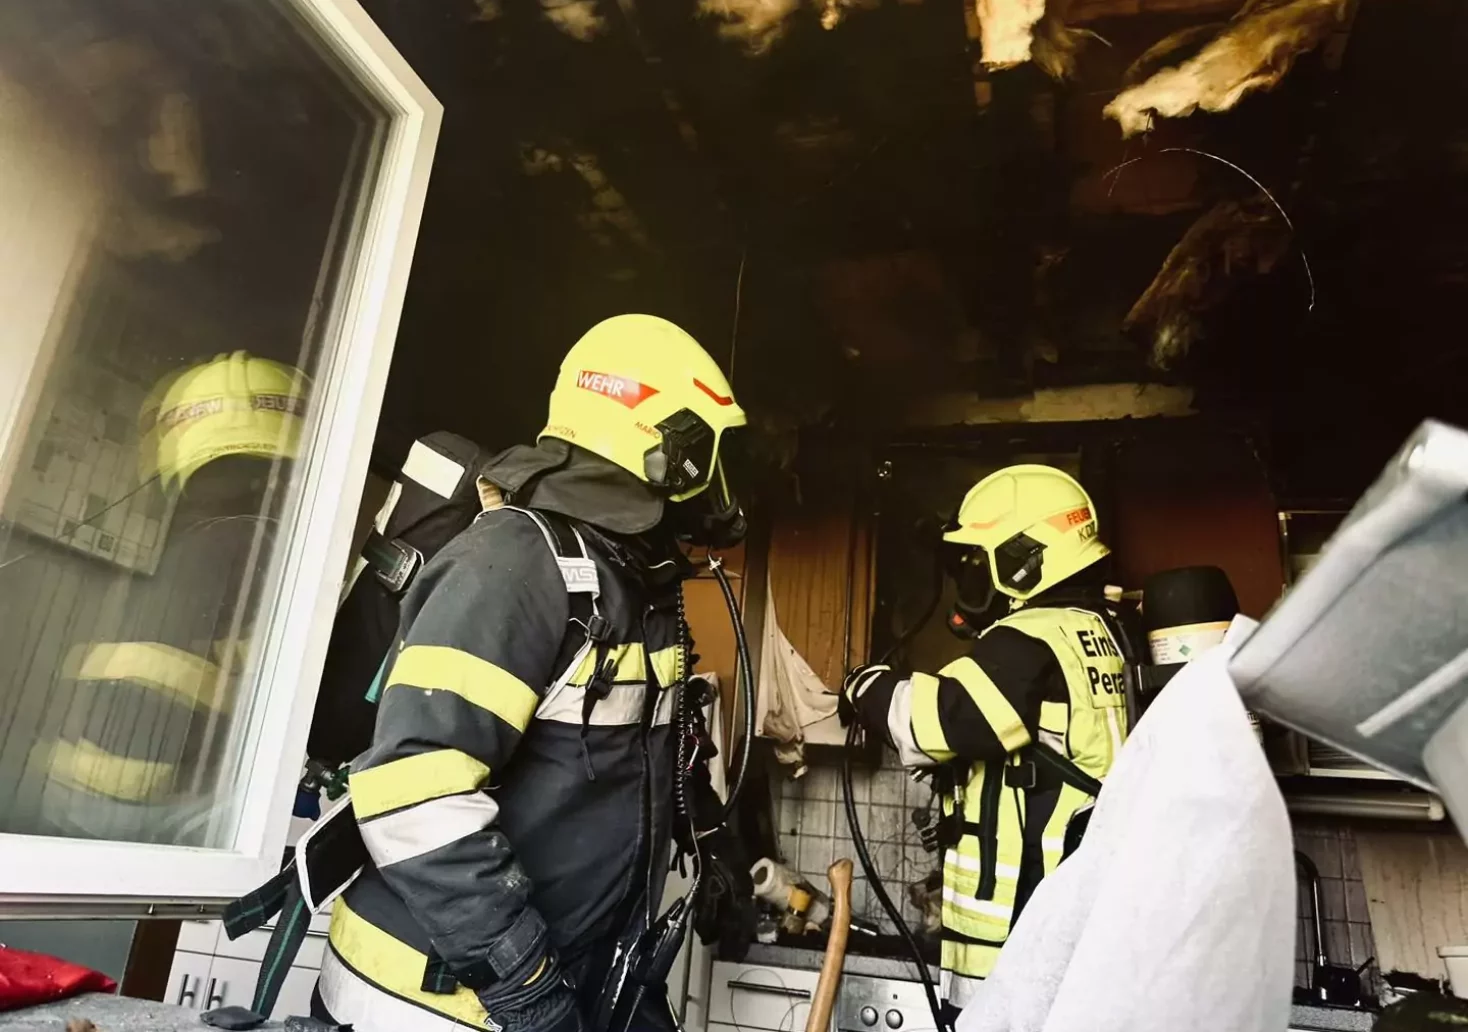 Bild auf 5min.at zeigt zwei Feuerwehrleute im Einsatz bei einem Küchenbrand.